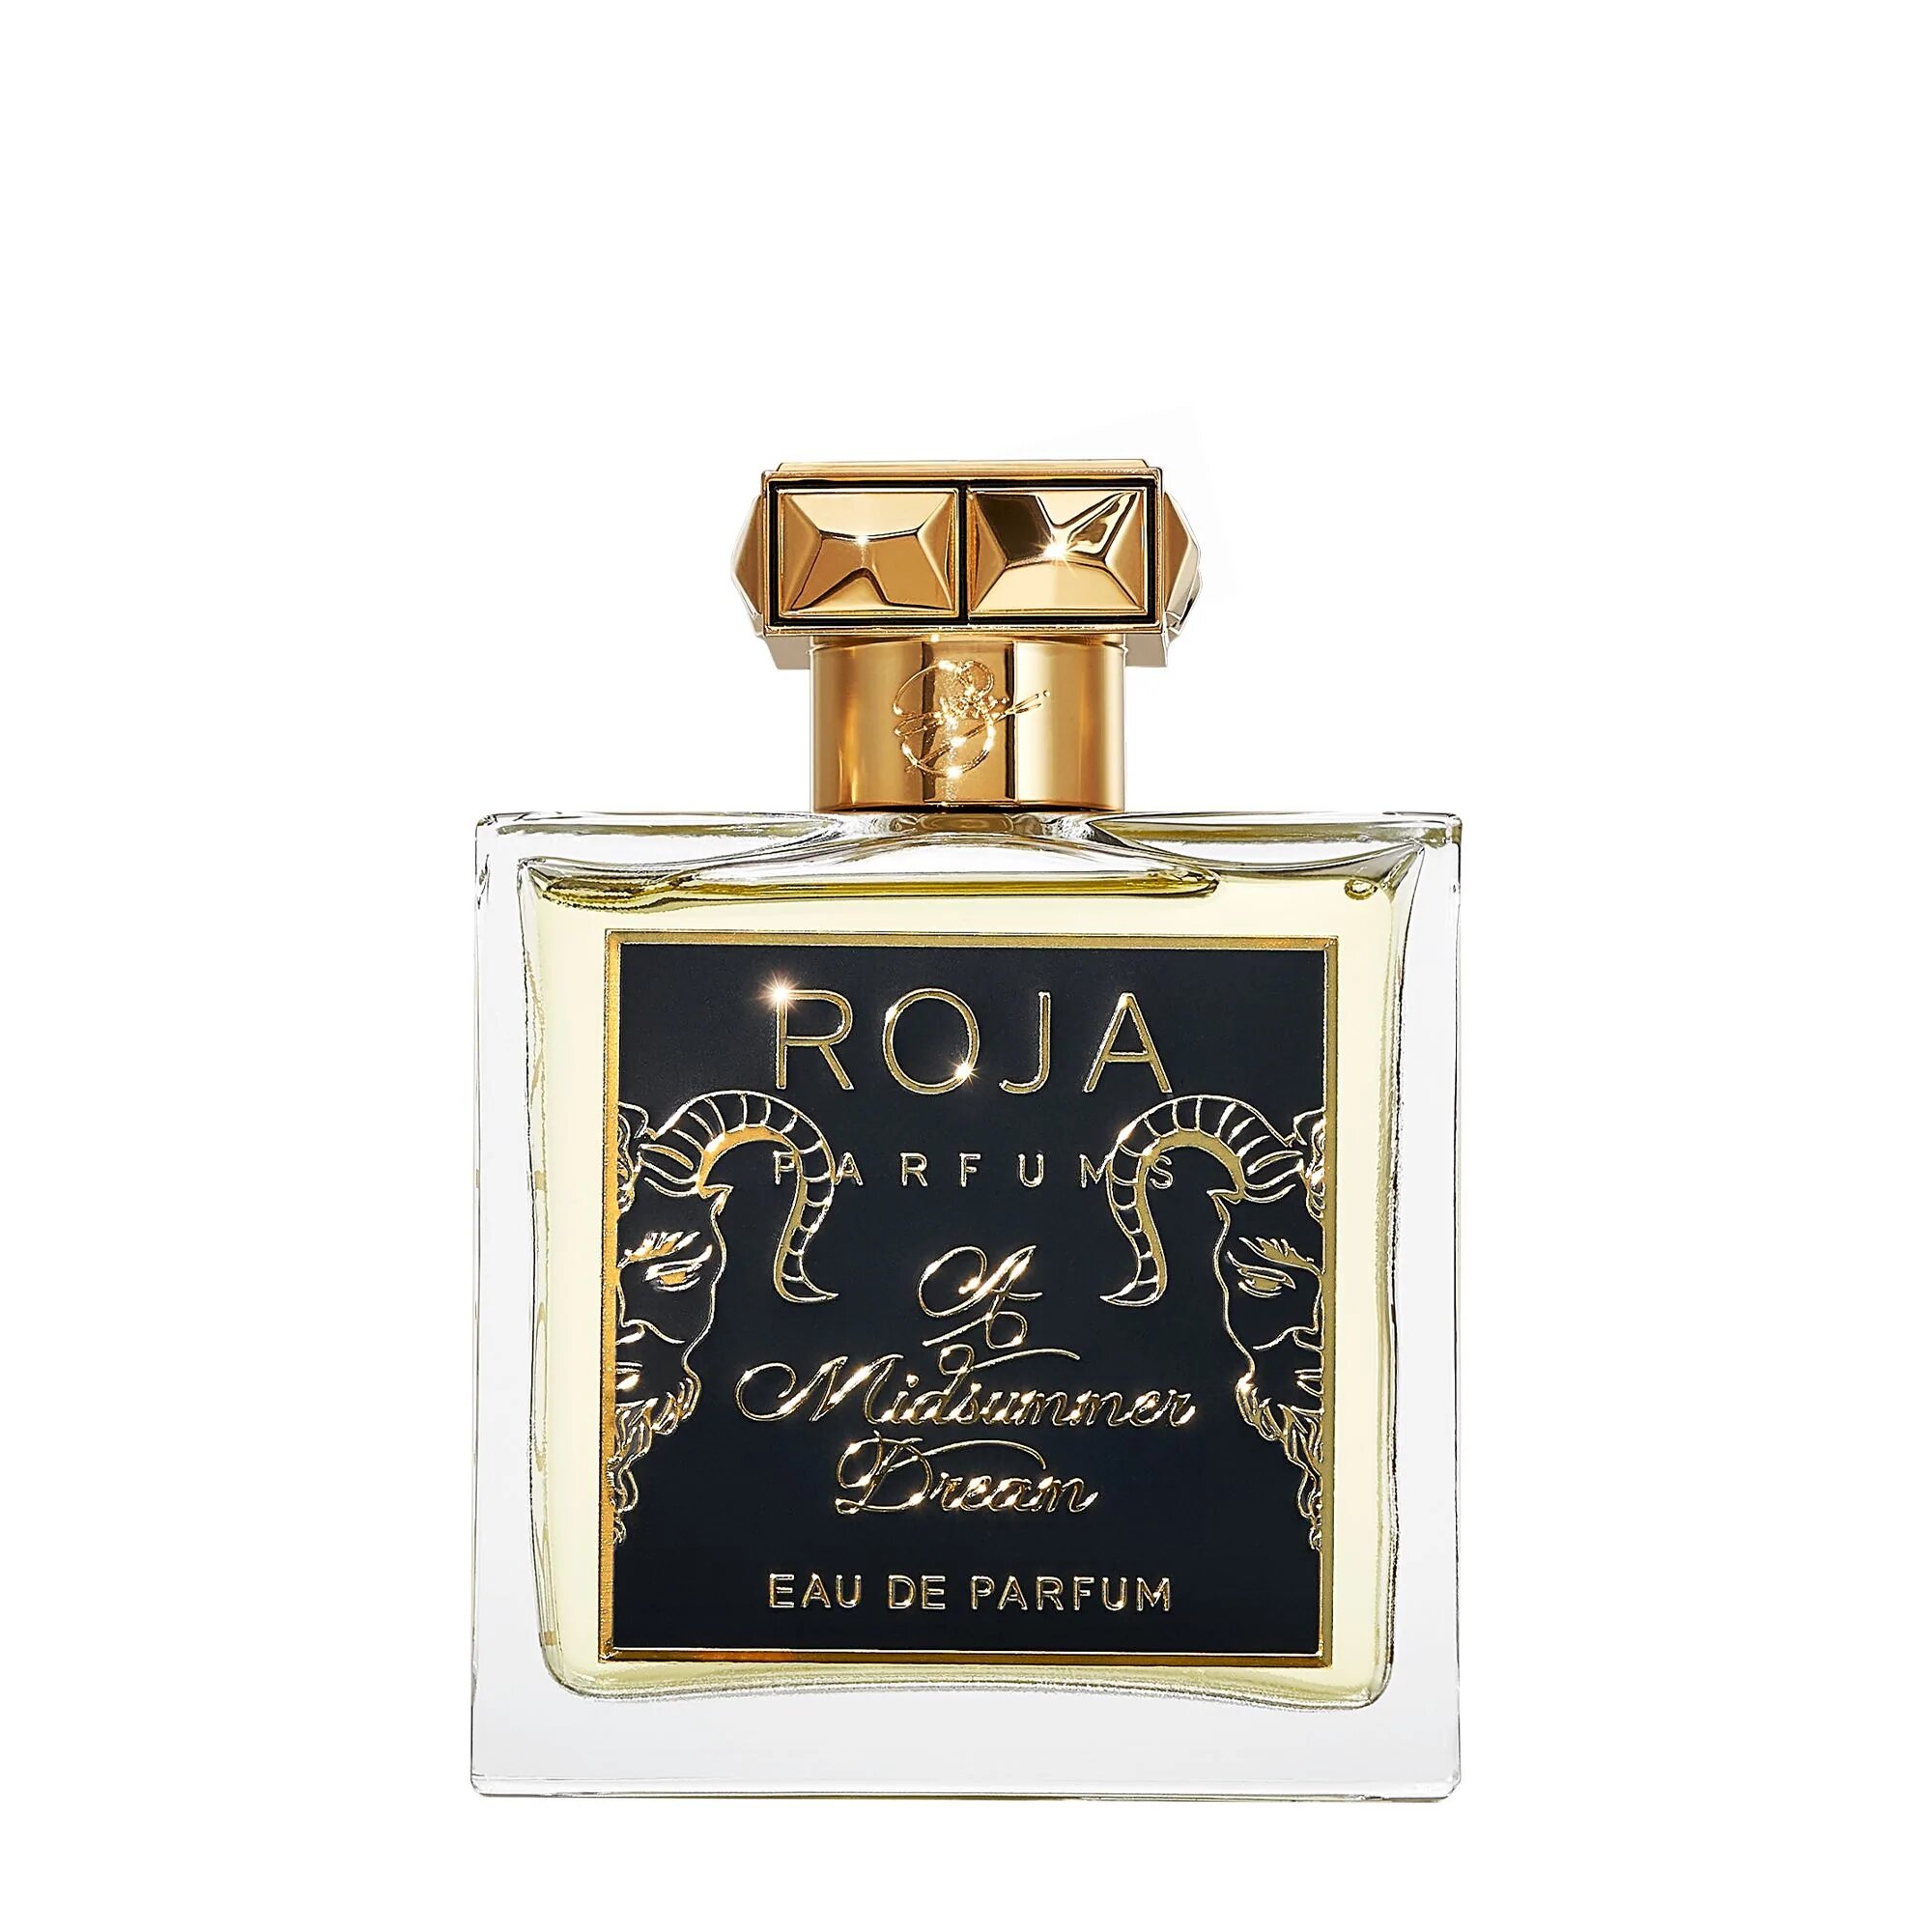 a-midsummer-dream-fragrance-roja-parfums-100ml-816049 (1)